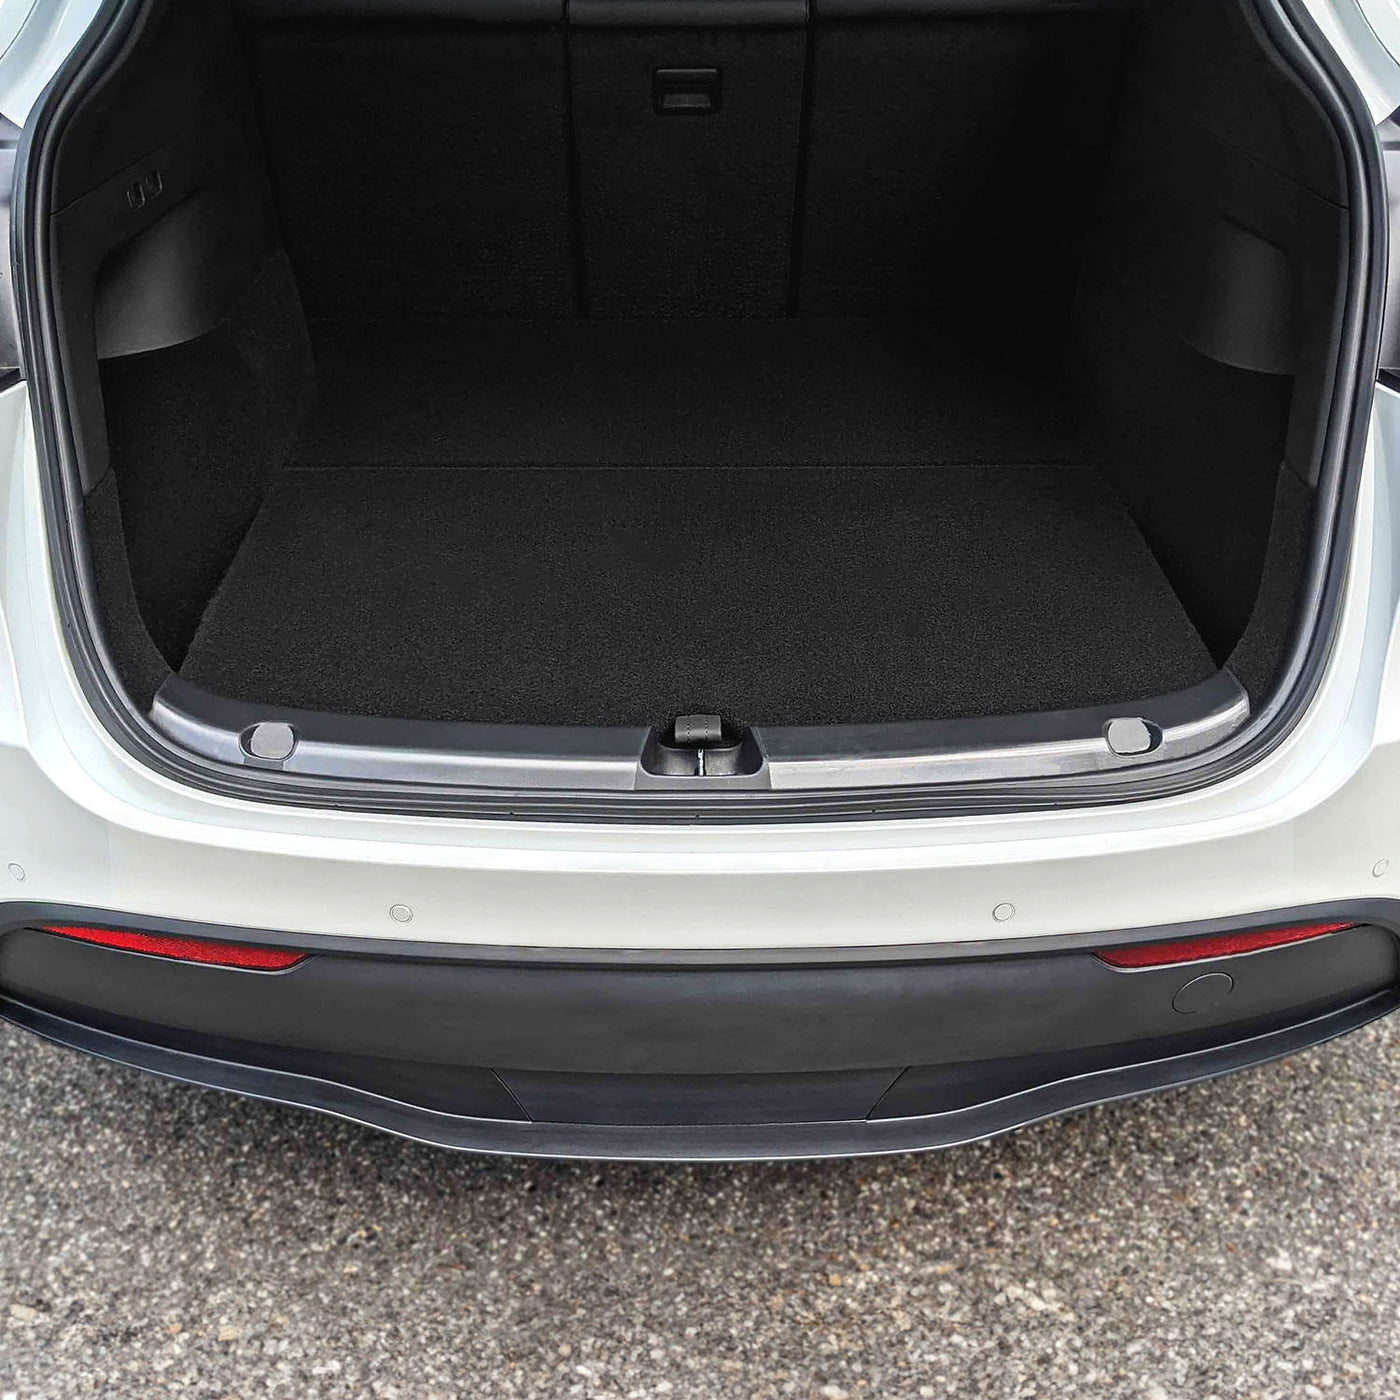 model y trunk bumper protector #ultrasonic-sensors-on-bumper_has-sensors